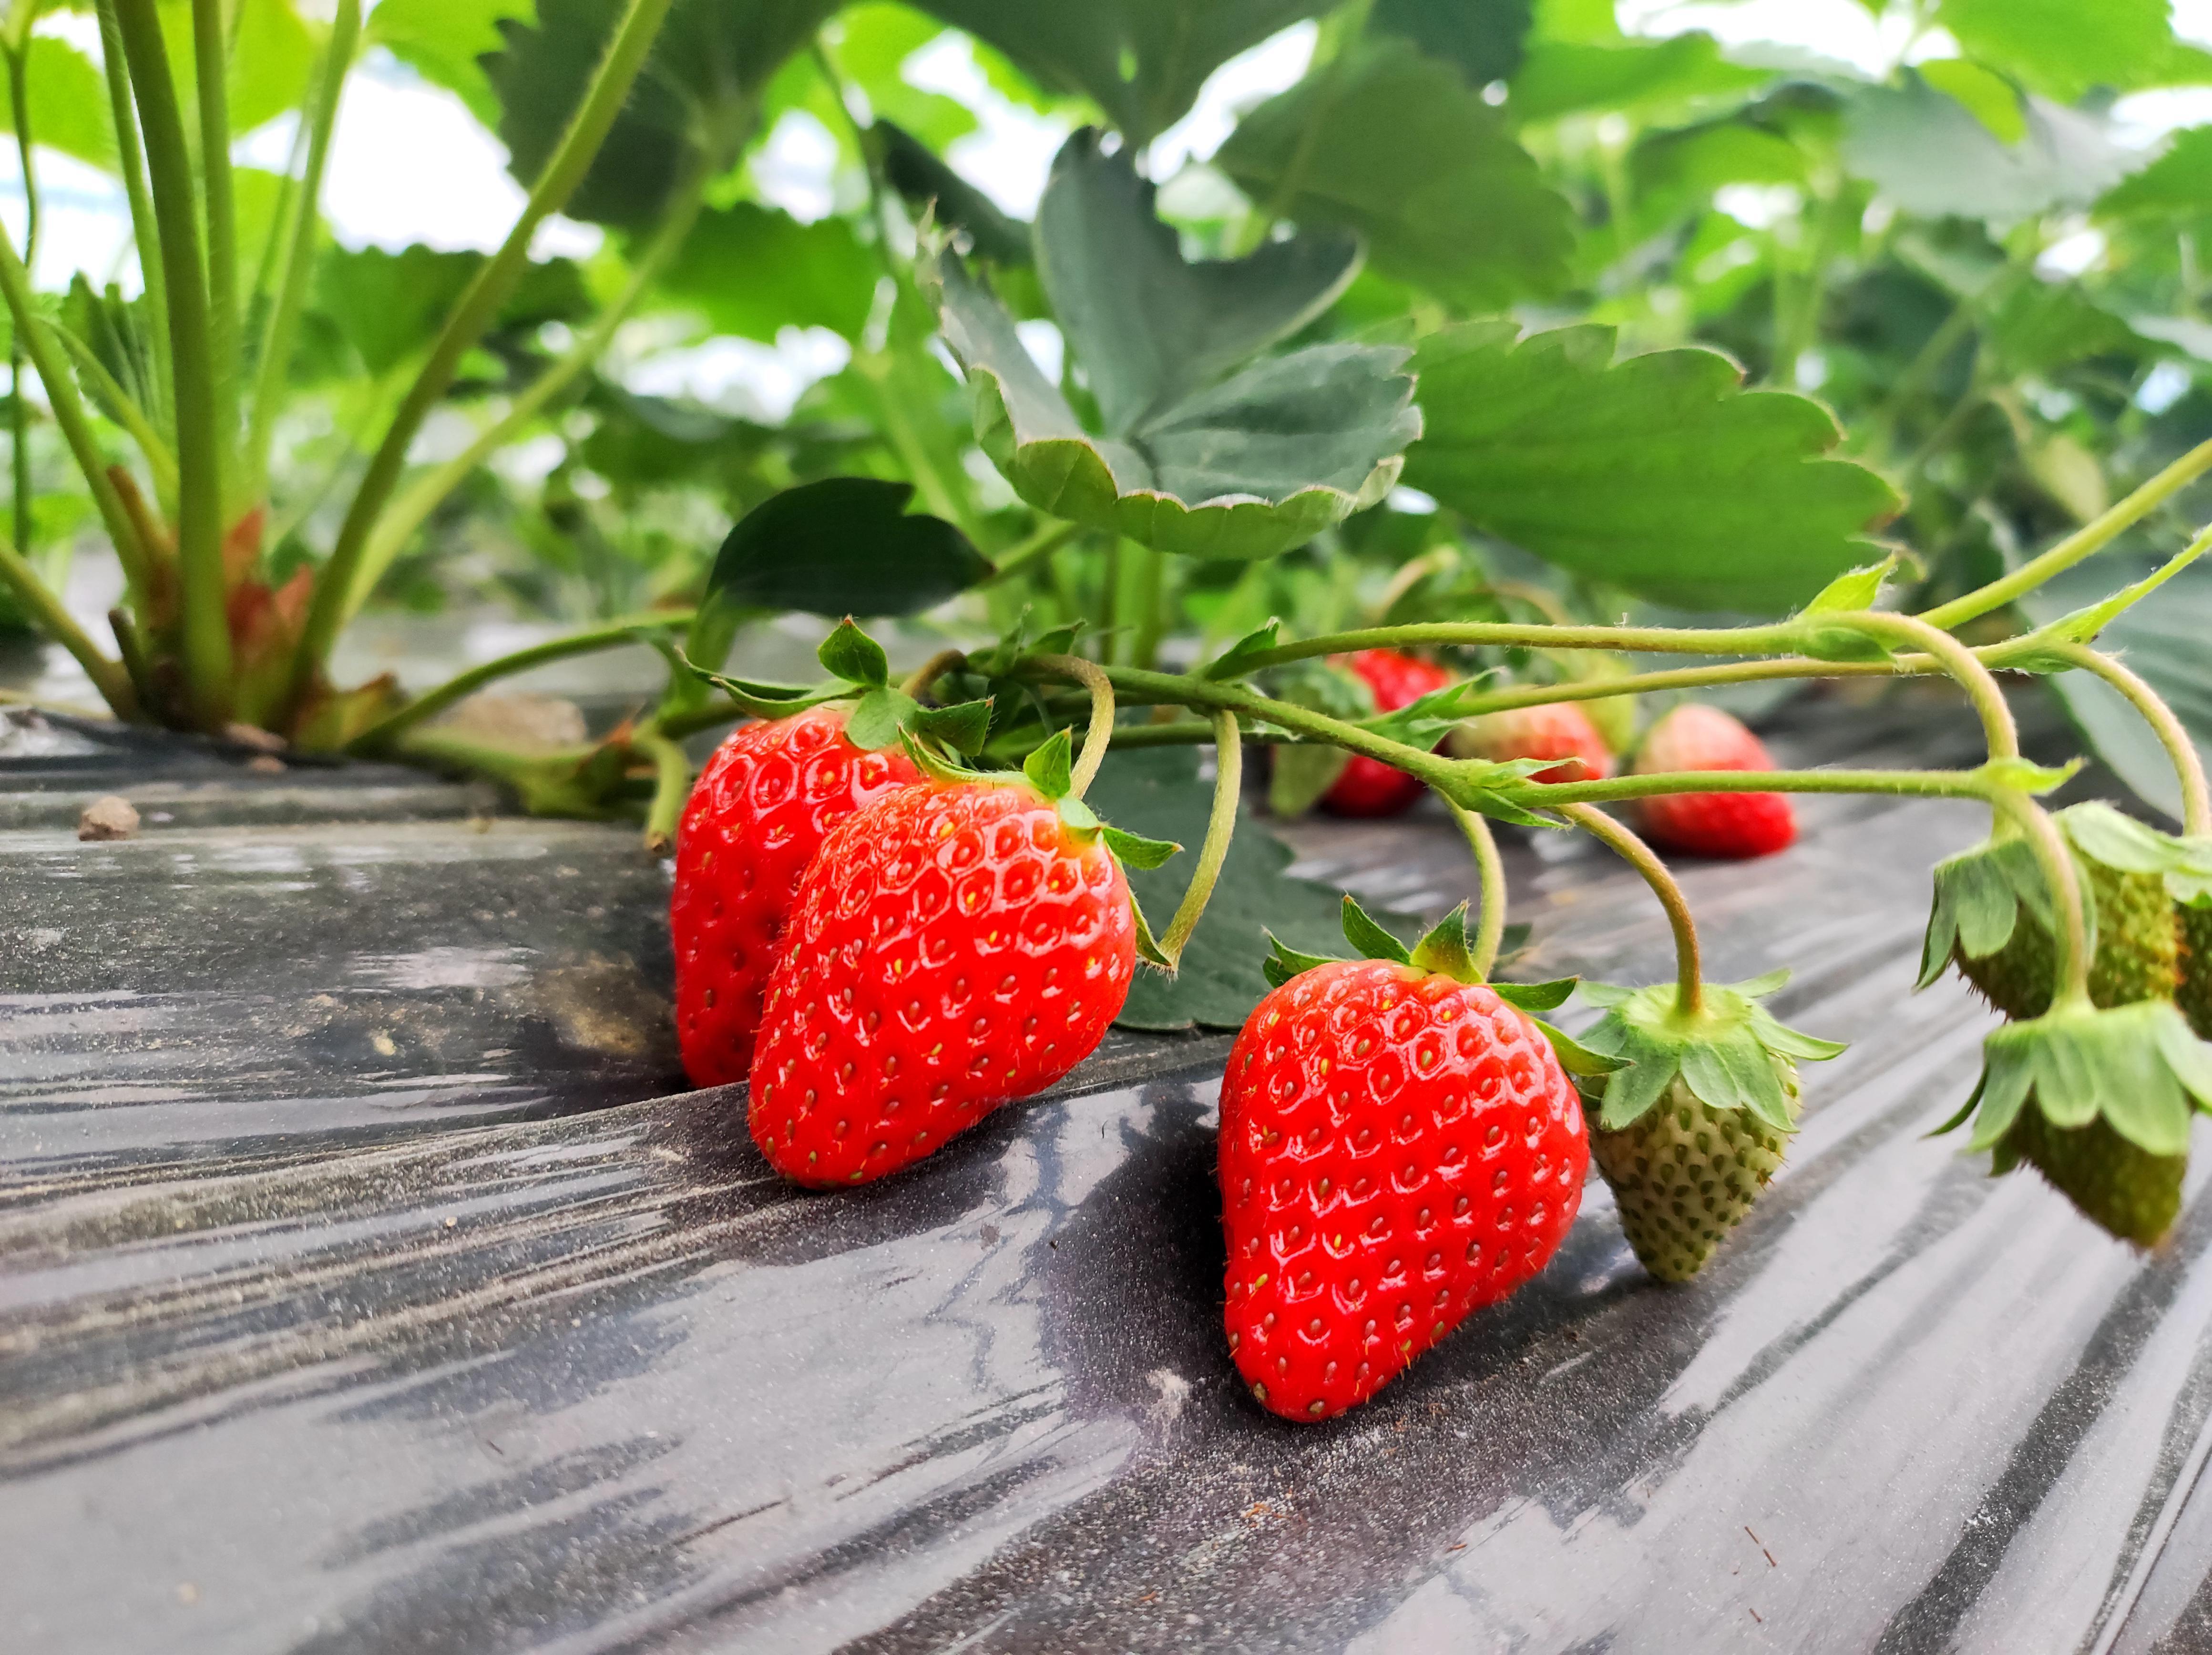 鲜红的草莓散发着诱人的果香。（花坝村提供）